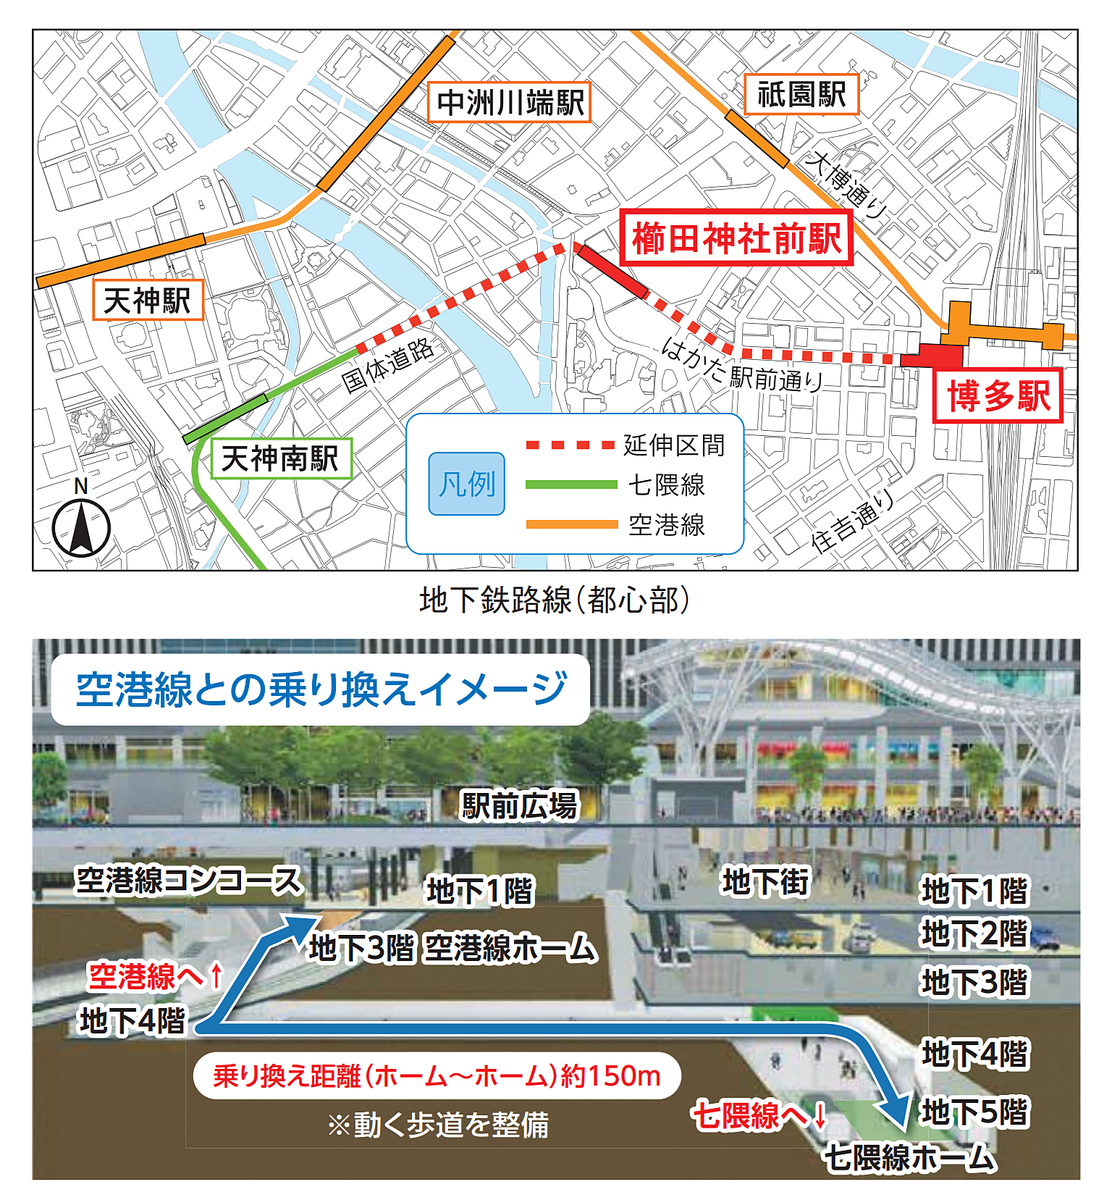 櫛田神社駅記念 はやか券 限定カラー いちょう - www.ipscm.org